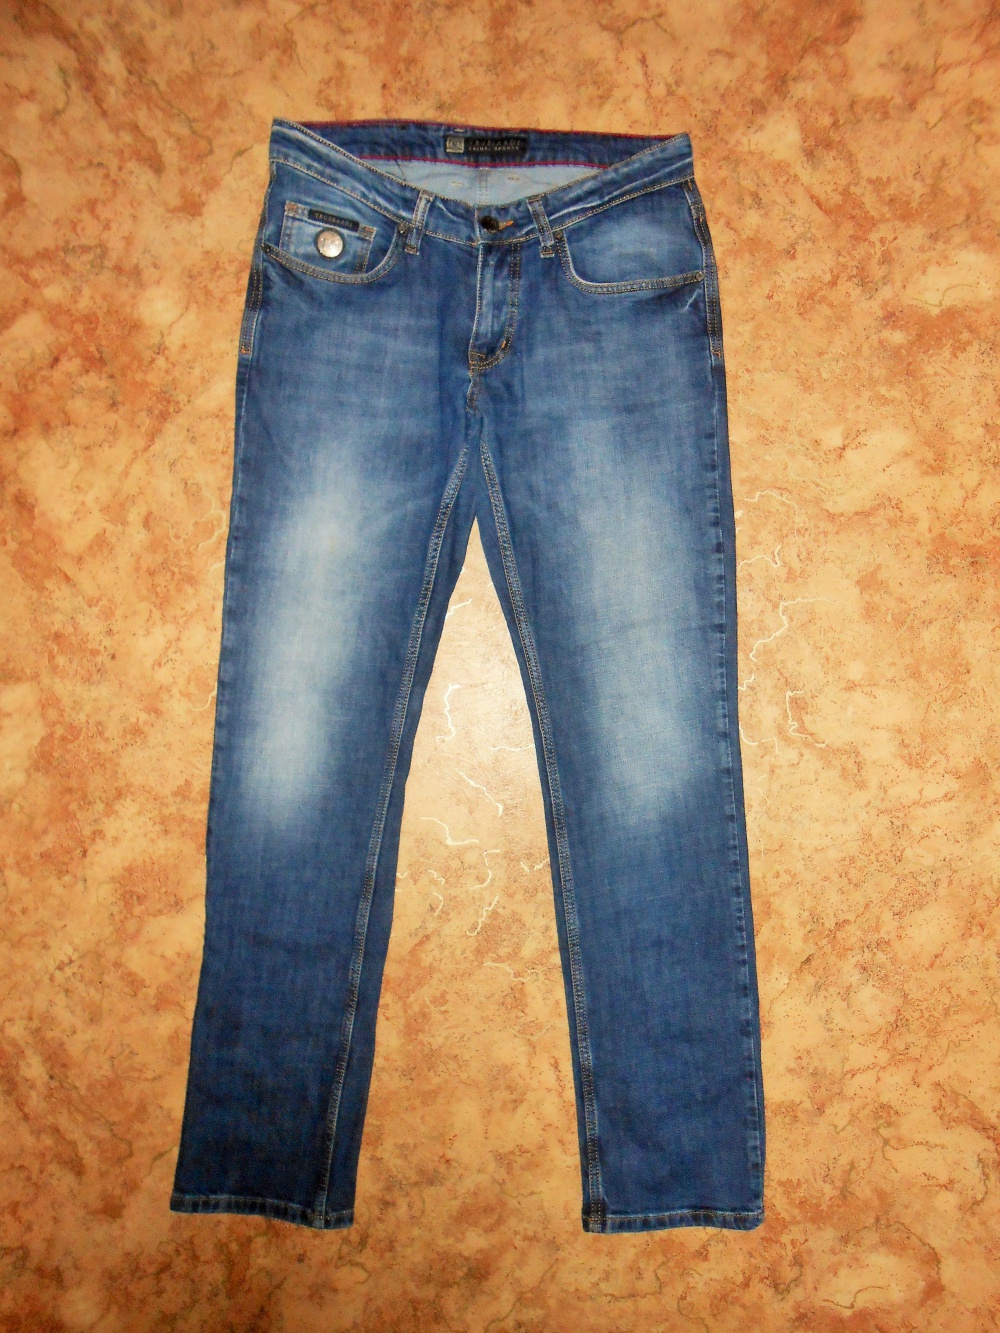 Брендовые джинсы TRUSSARDI  W 31  L 34.